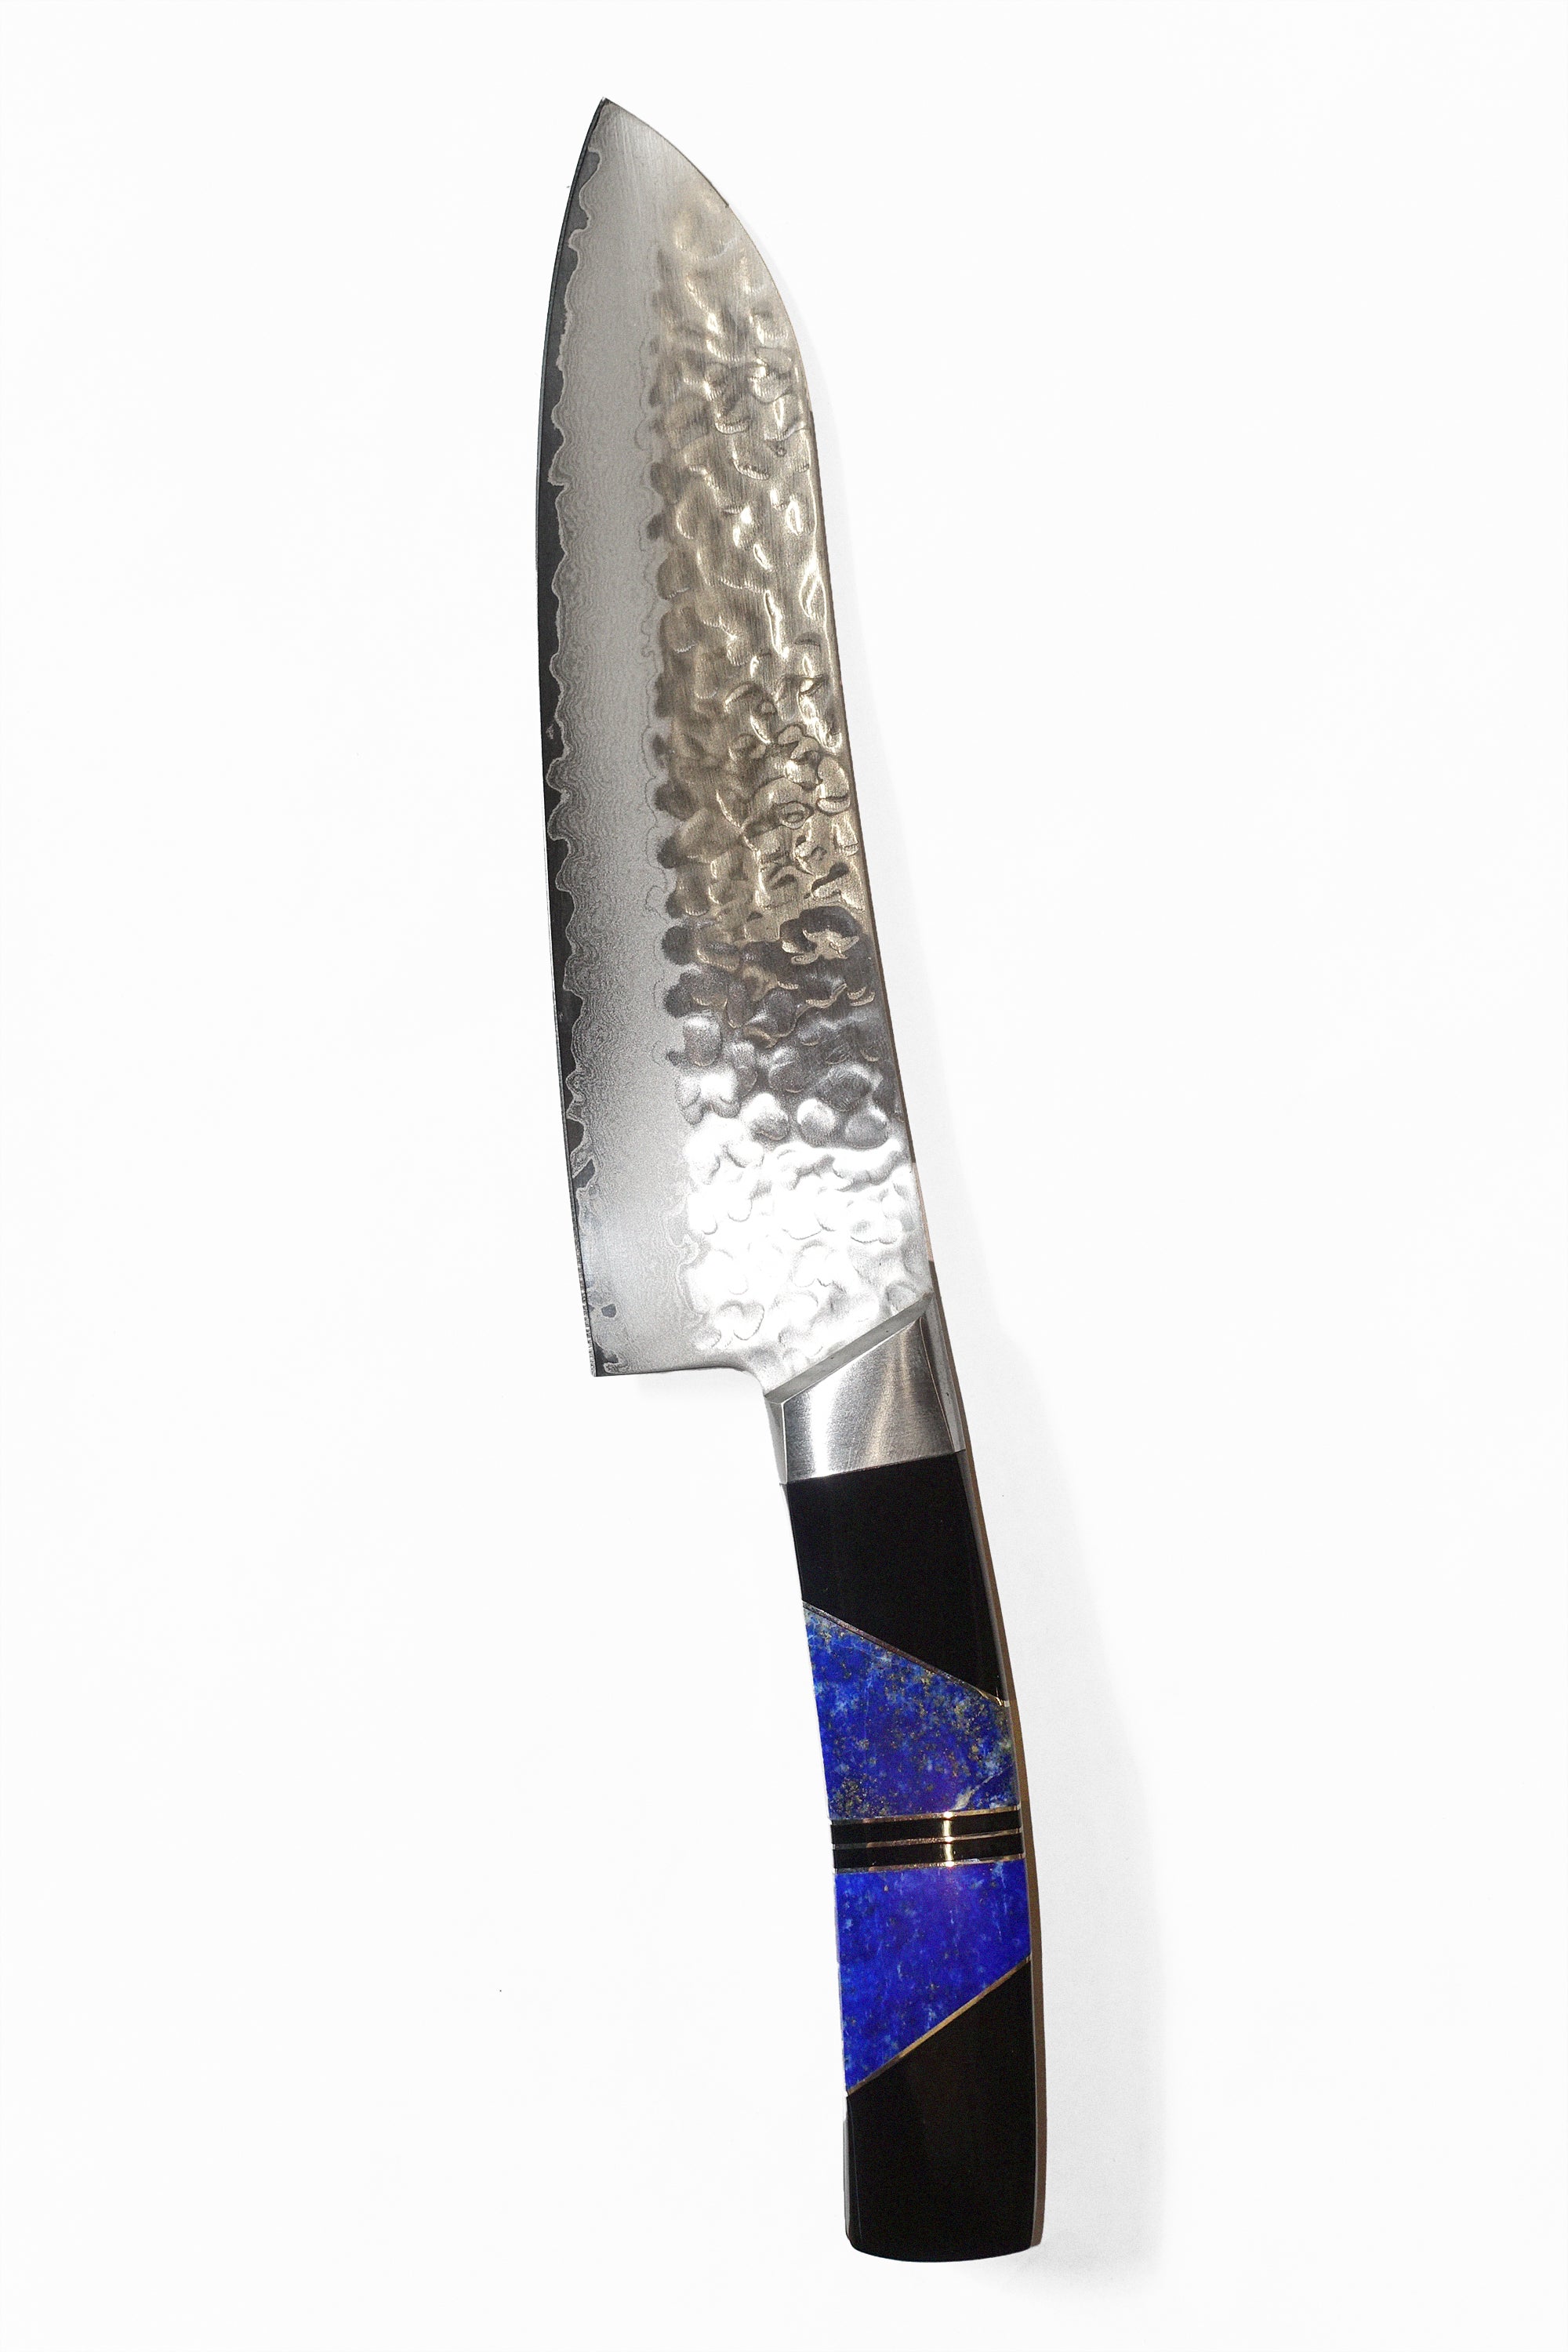 7" Santoku Knife in Lapis